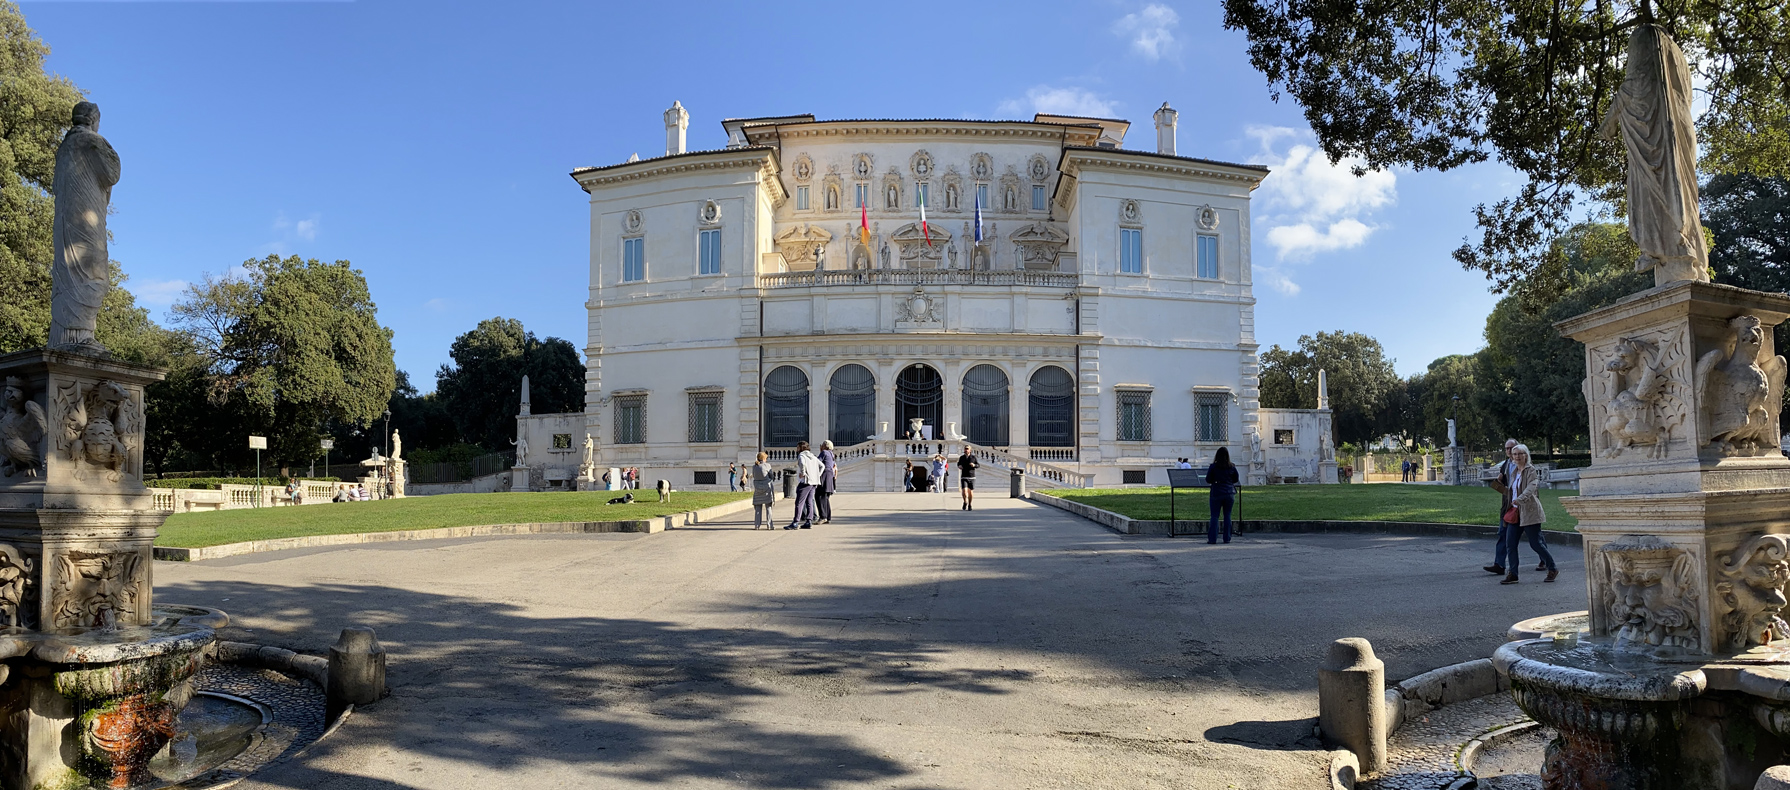 Villa Borghese / Galleria Borghese